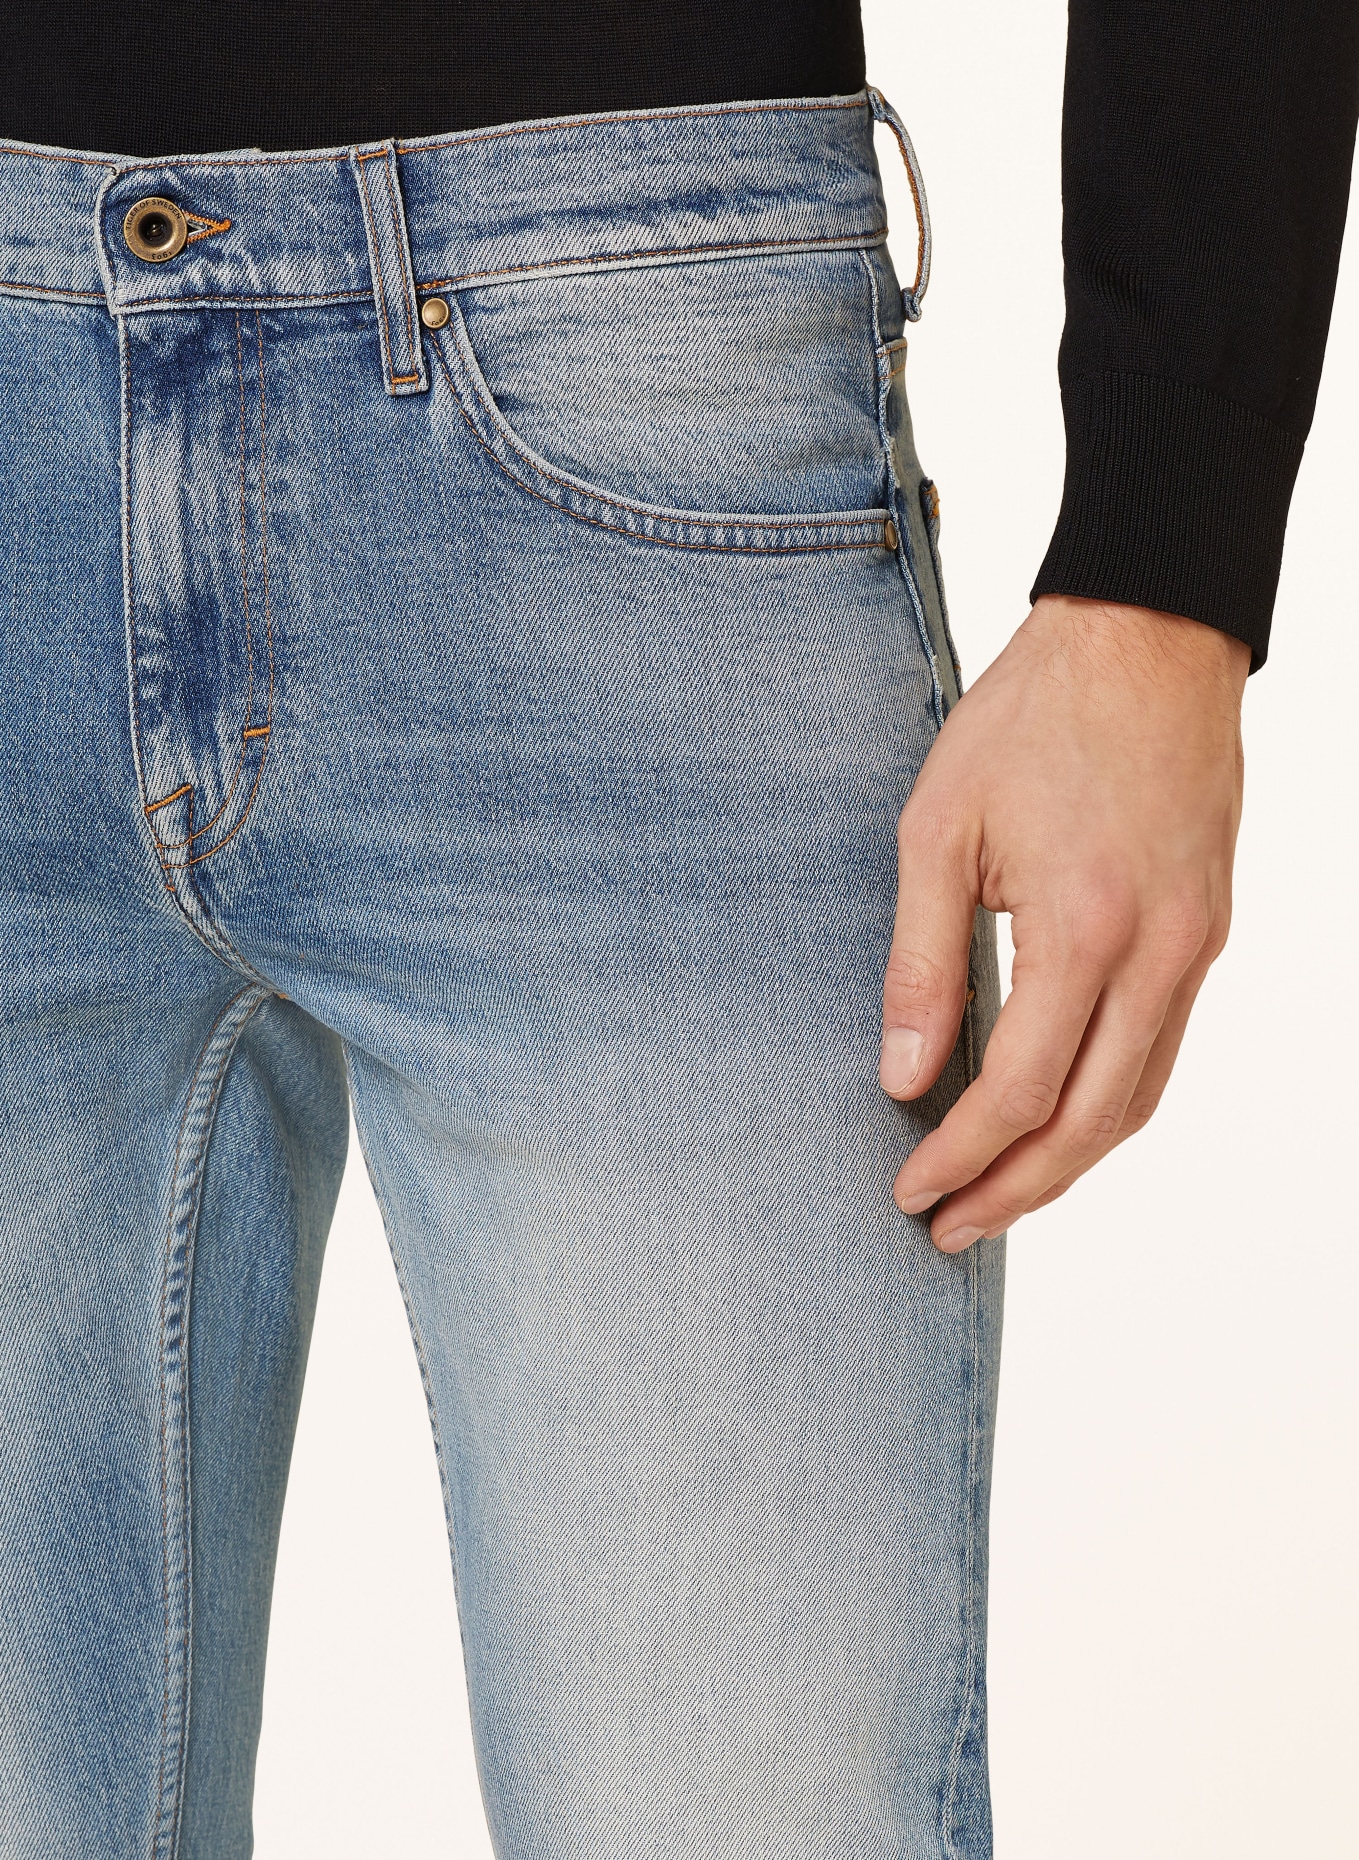 TIGER OF SWEDEN Jeans PISTOLERO slim fit, Color: 200 Light blue (Image 5)